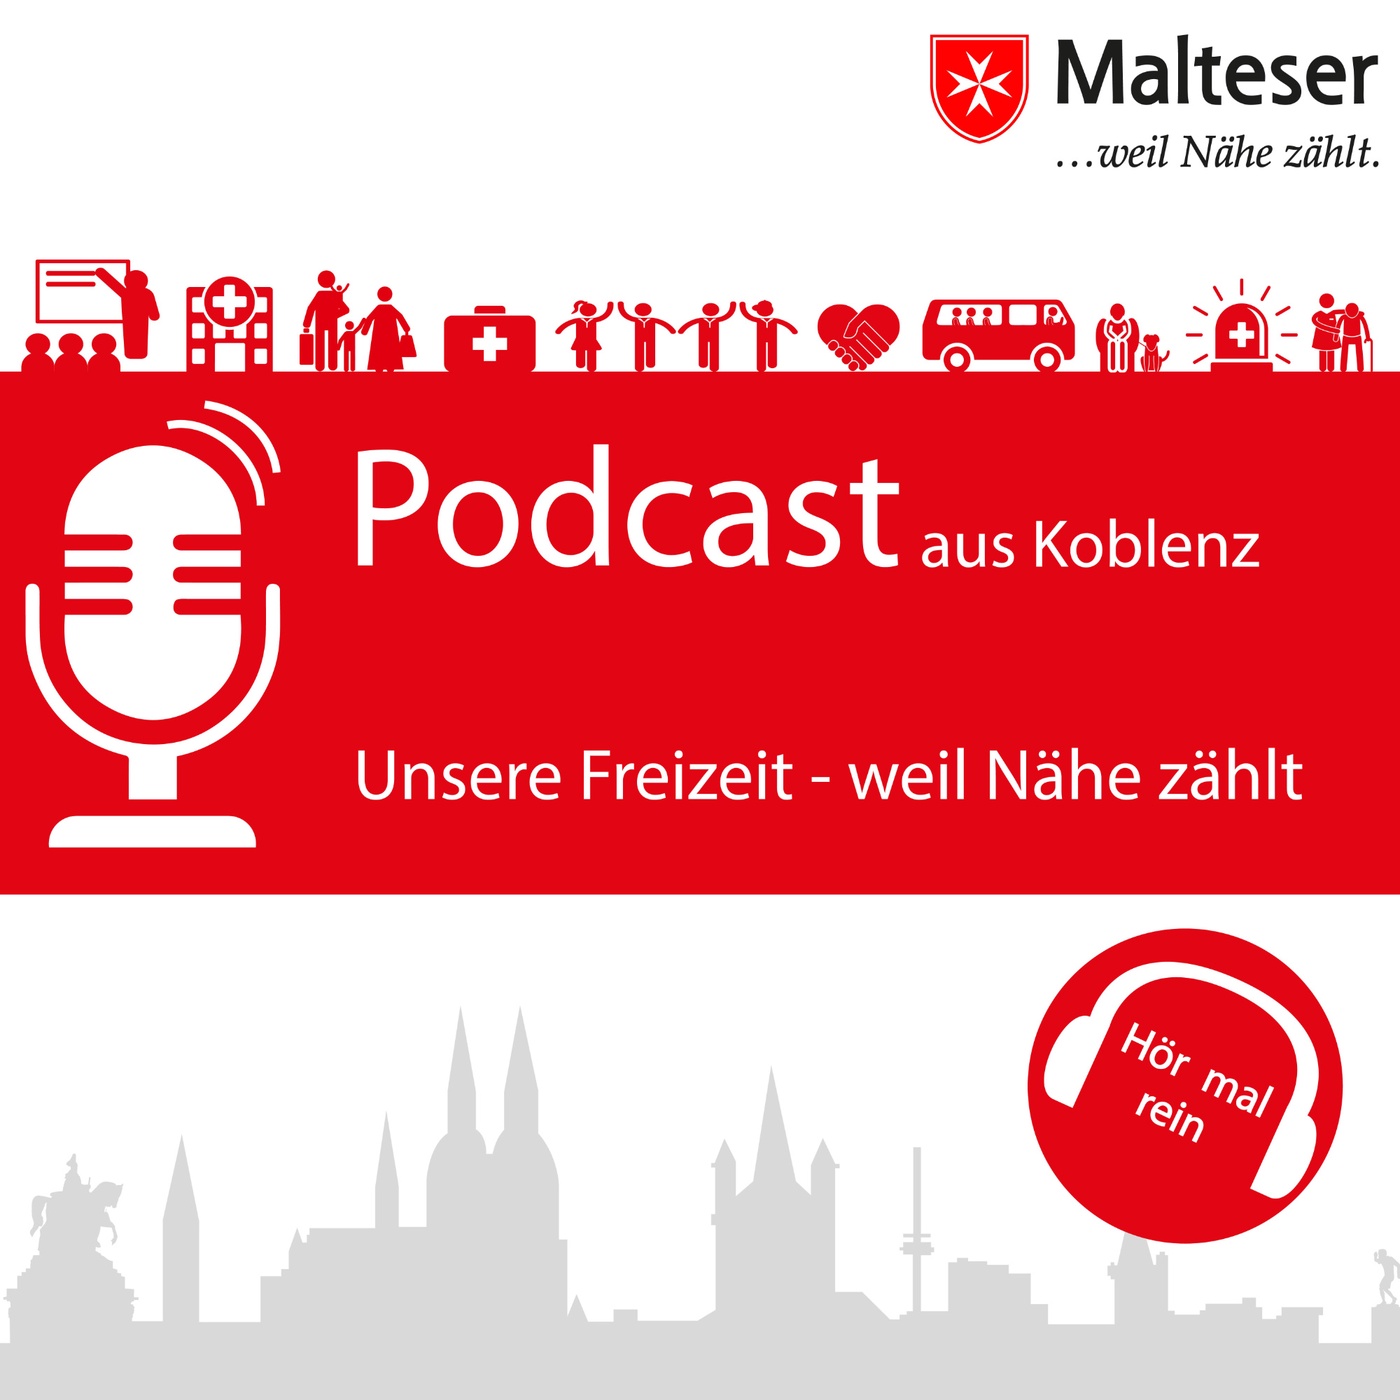 Malteser Koblenz